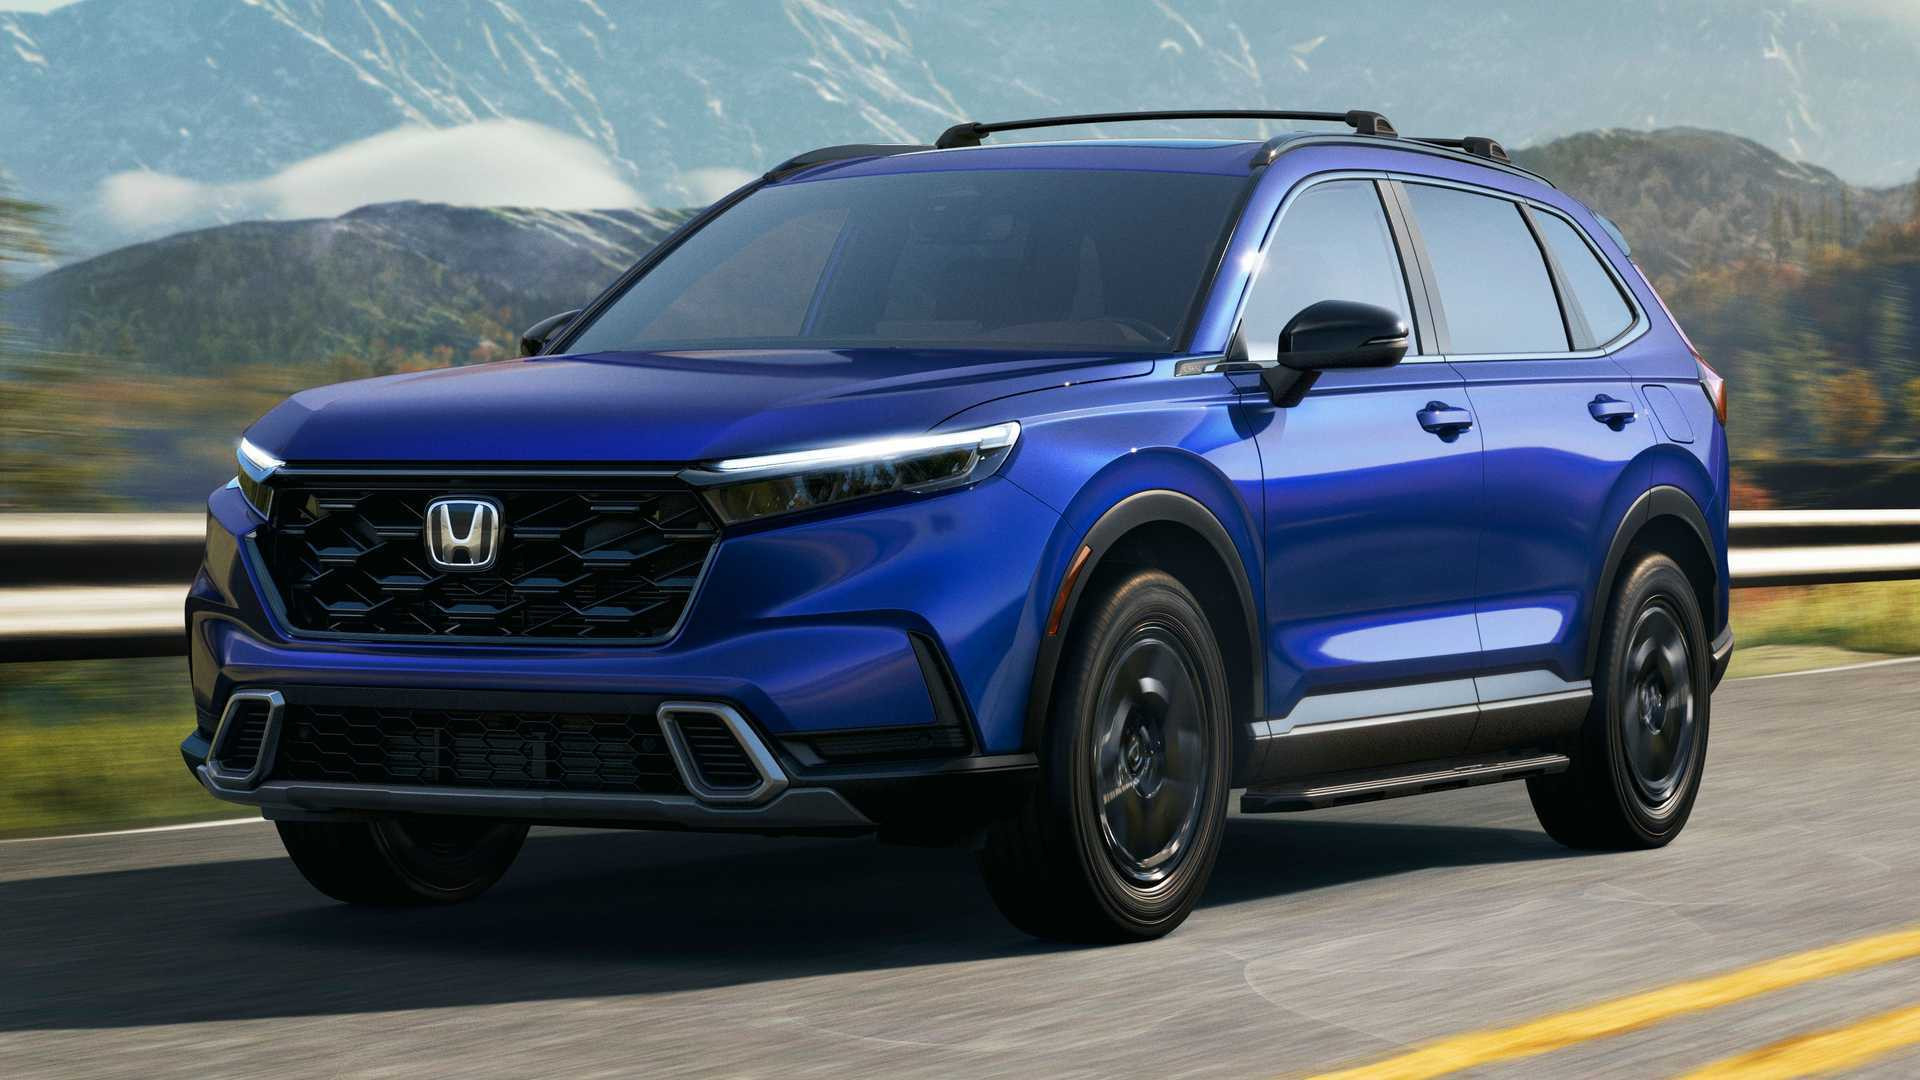 2023 Honda Crv Hybrids New Concept